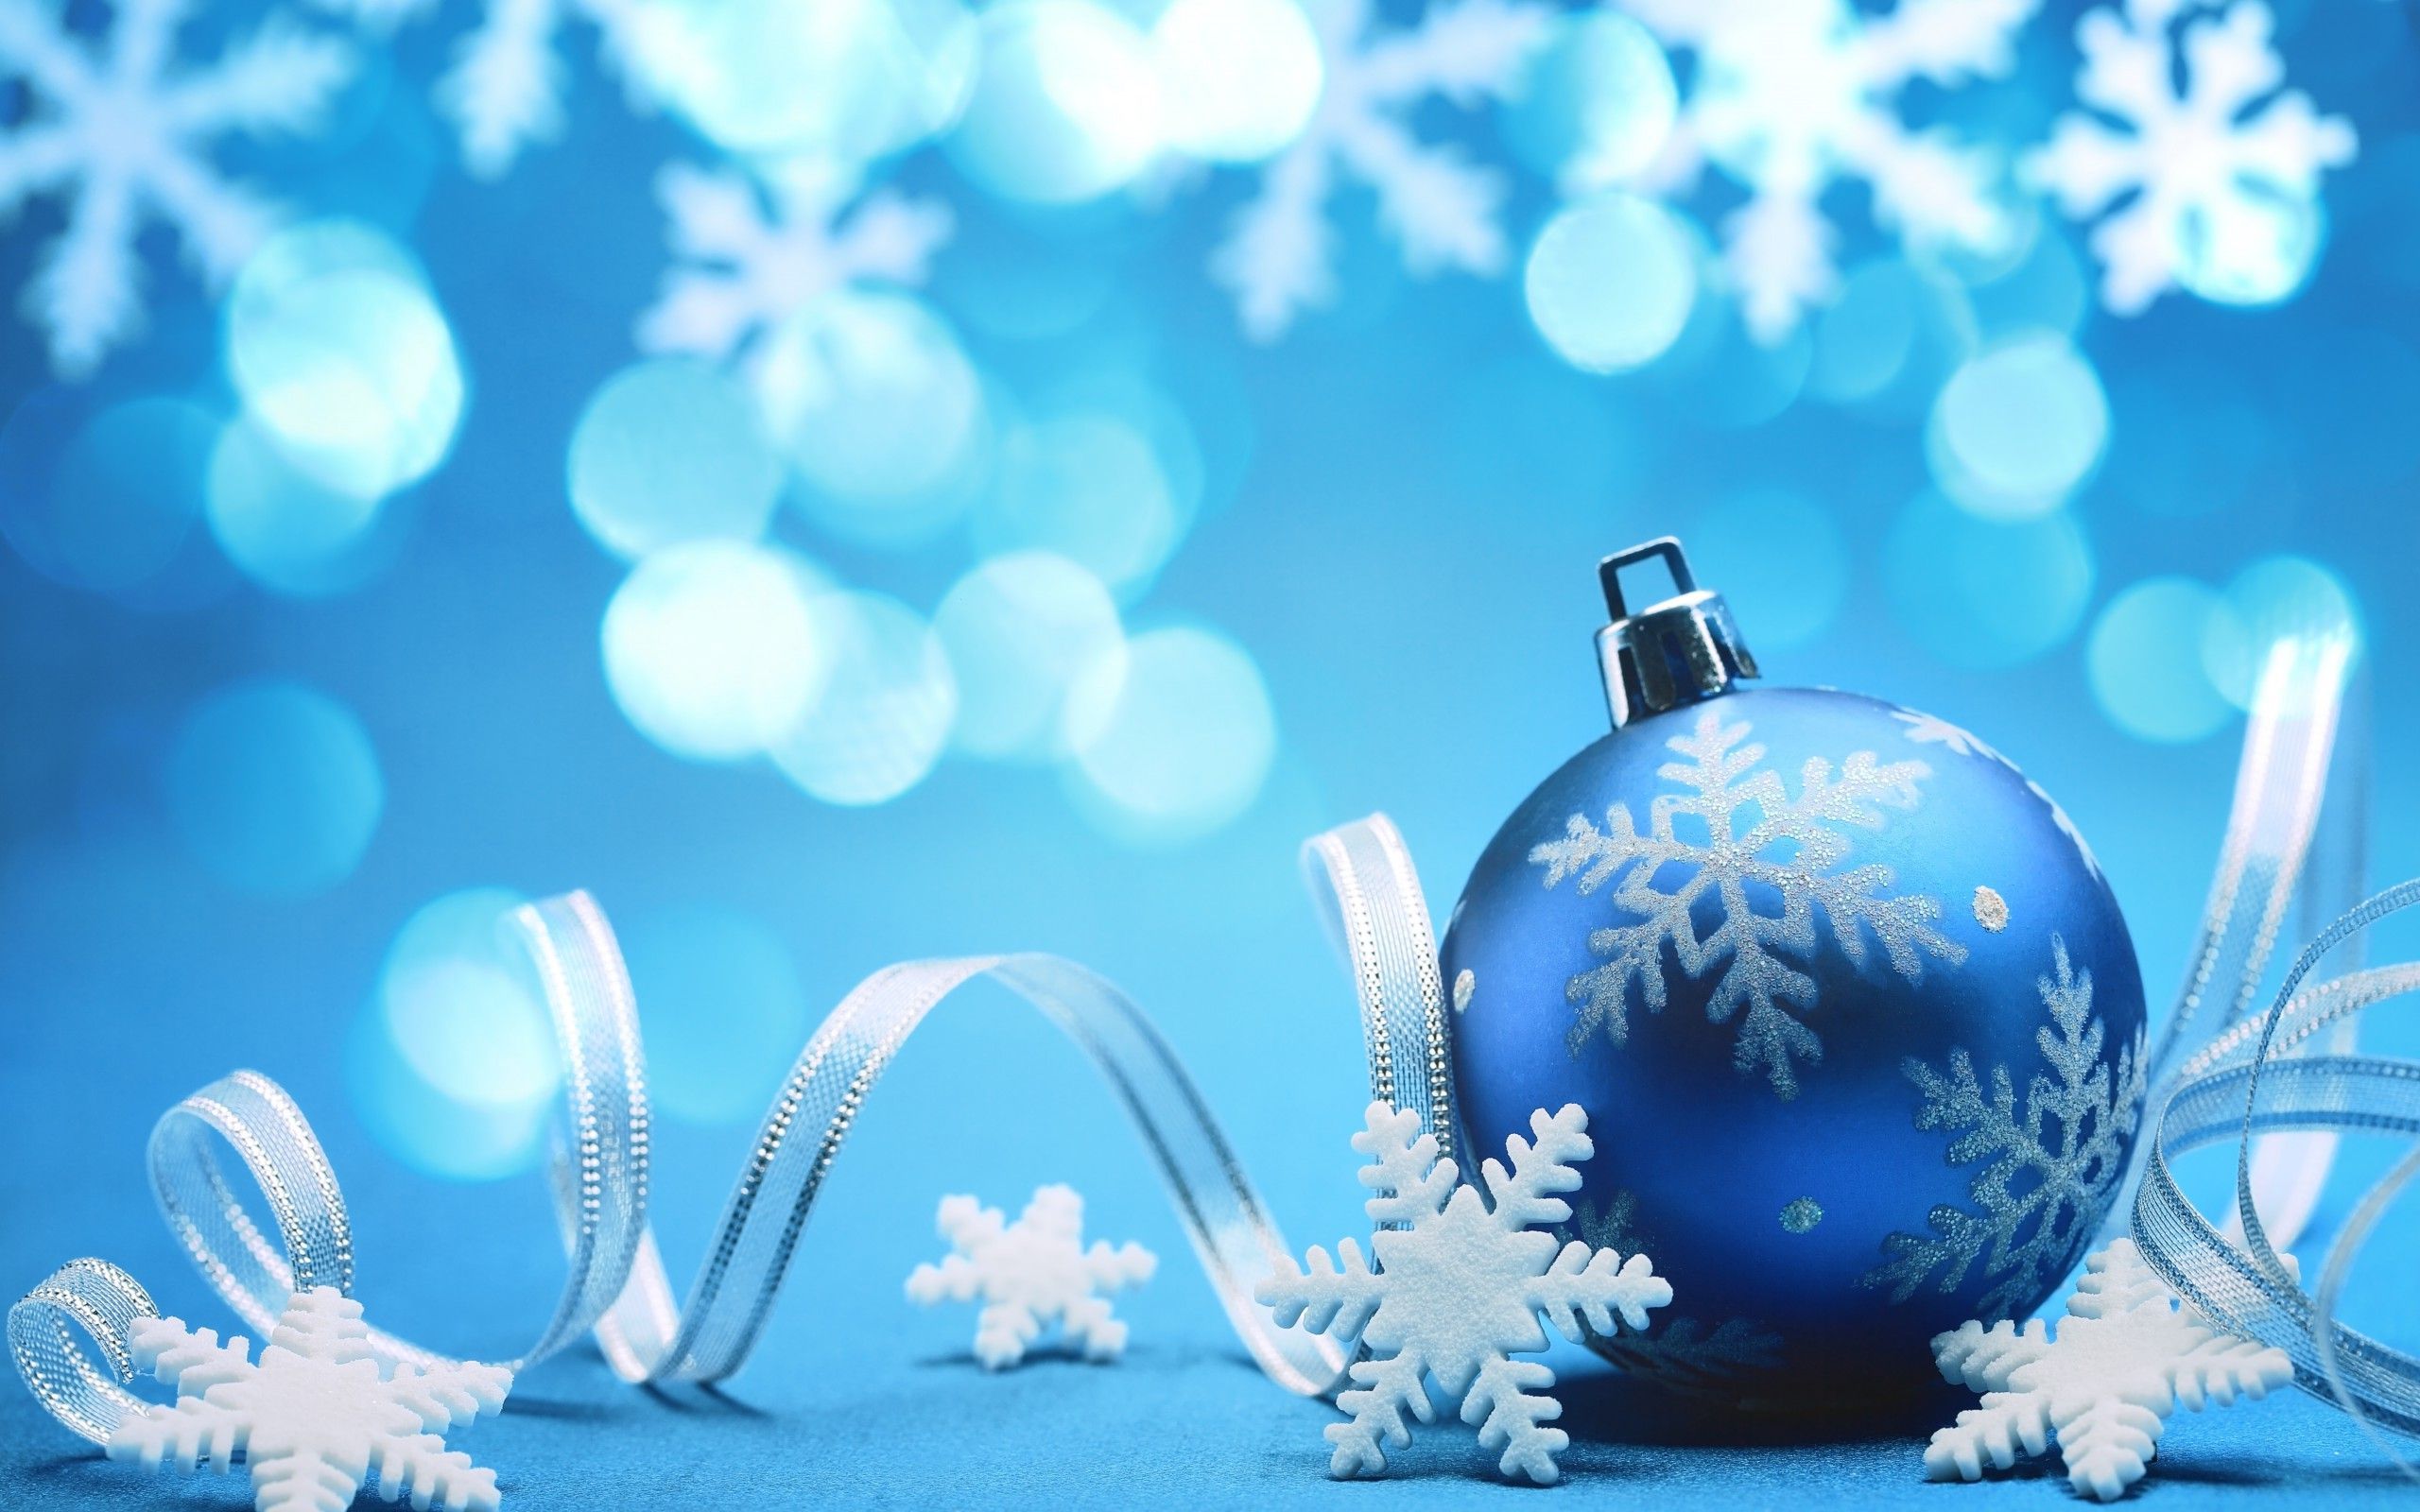 Chào đón mùa lễ hội cùng với hình nền Giáng Sinh màu xanh nổi bật! Hãy đổi một chút cảm giác từ những hình nền truyền thống bằng cách sử dụng một hình nền màu xanh giúp làm toát lên sự chung tay và niềm vui trong mùa lễ hội. Làm cho máy tính của bạn lung linh trong mùa lễ hội cùng với hình nền thú vị này!